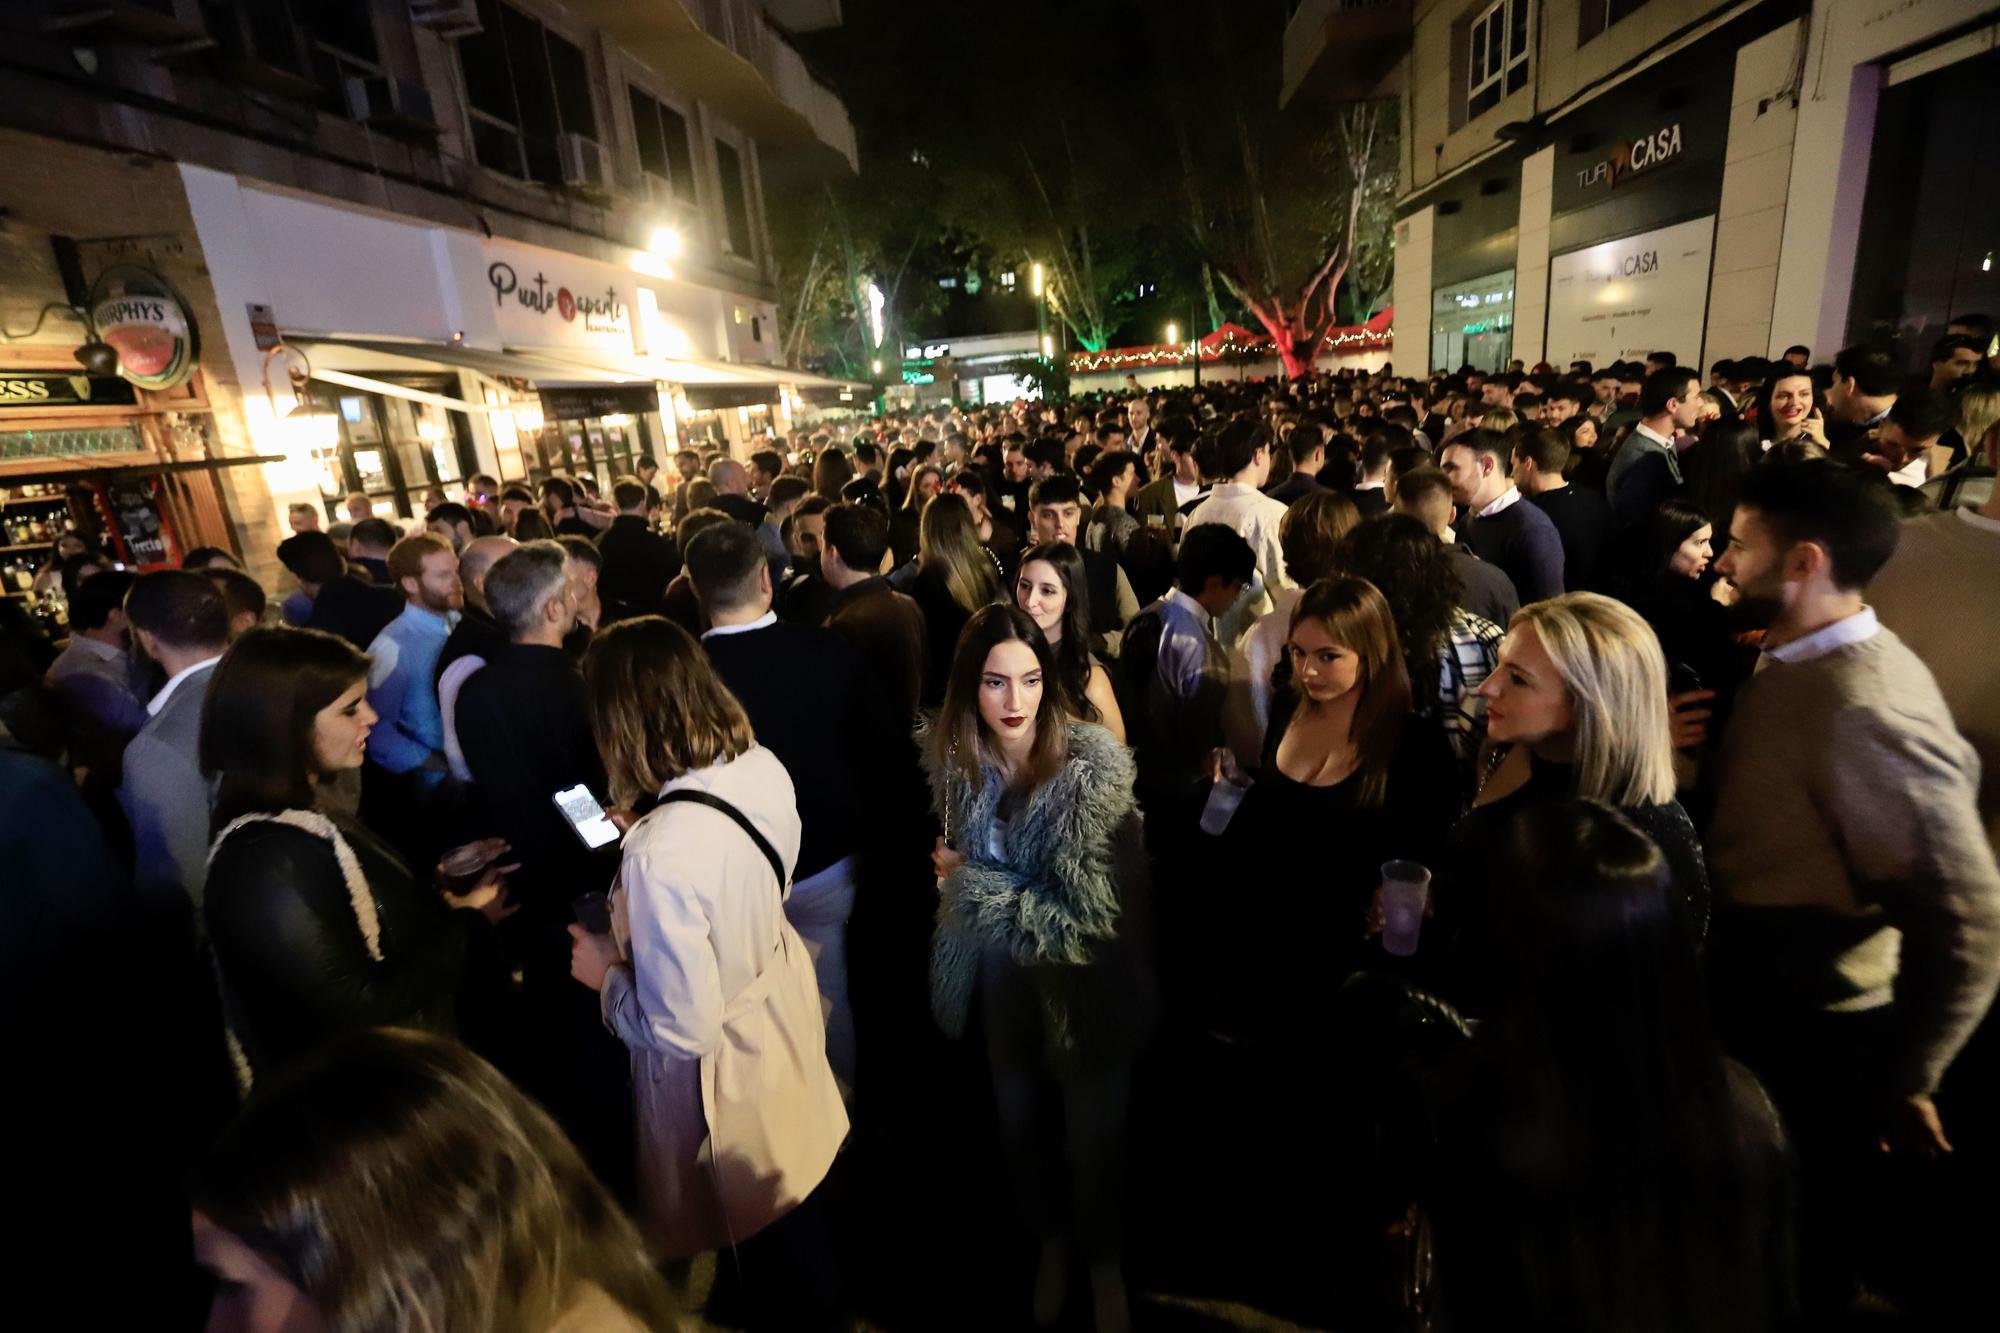 La gente abarrota las calles de Murcia con 'el tardeo' de Nochebuena